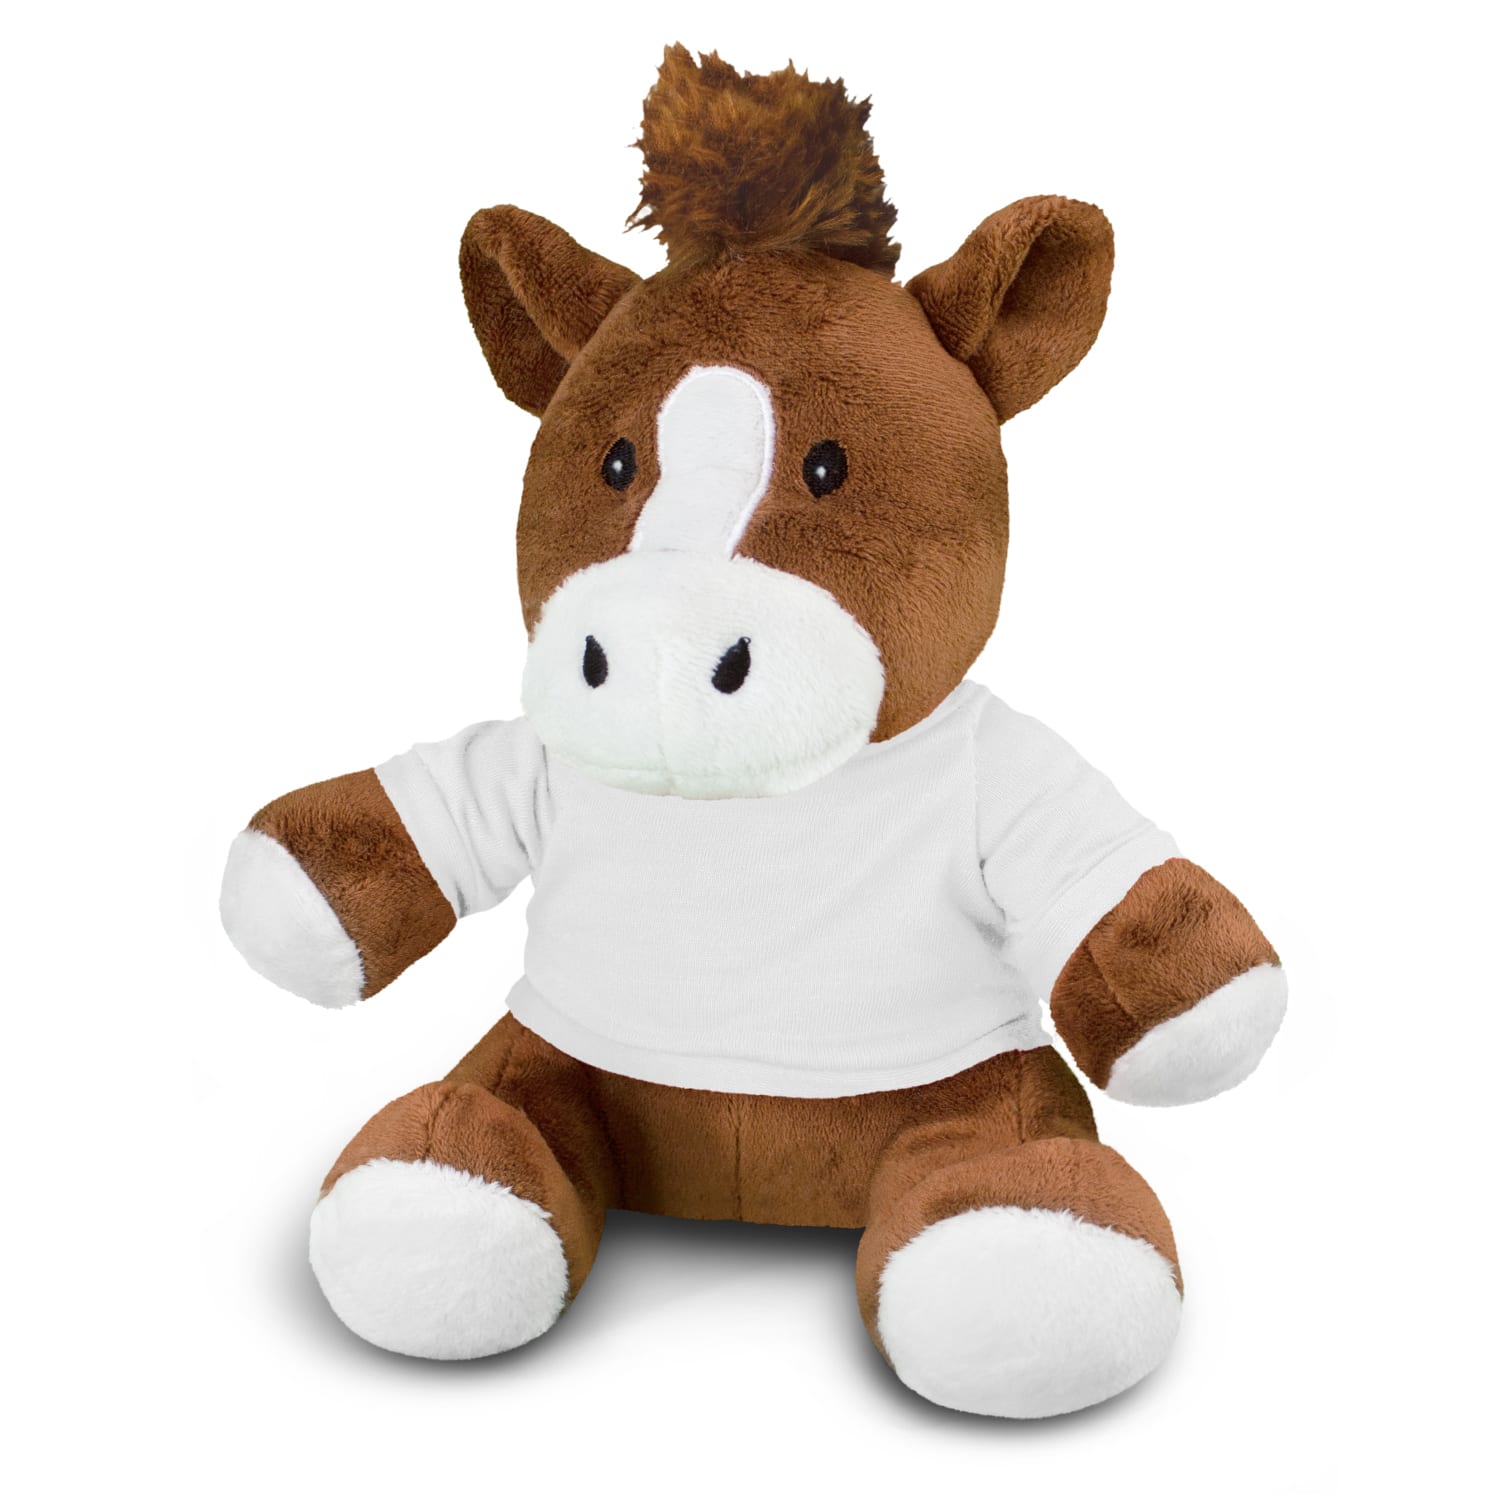 Fundraising Horse Plush Toy Horse